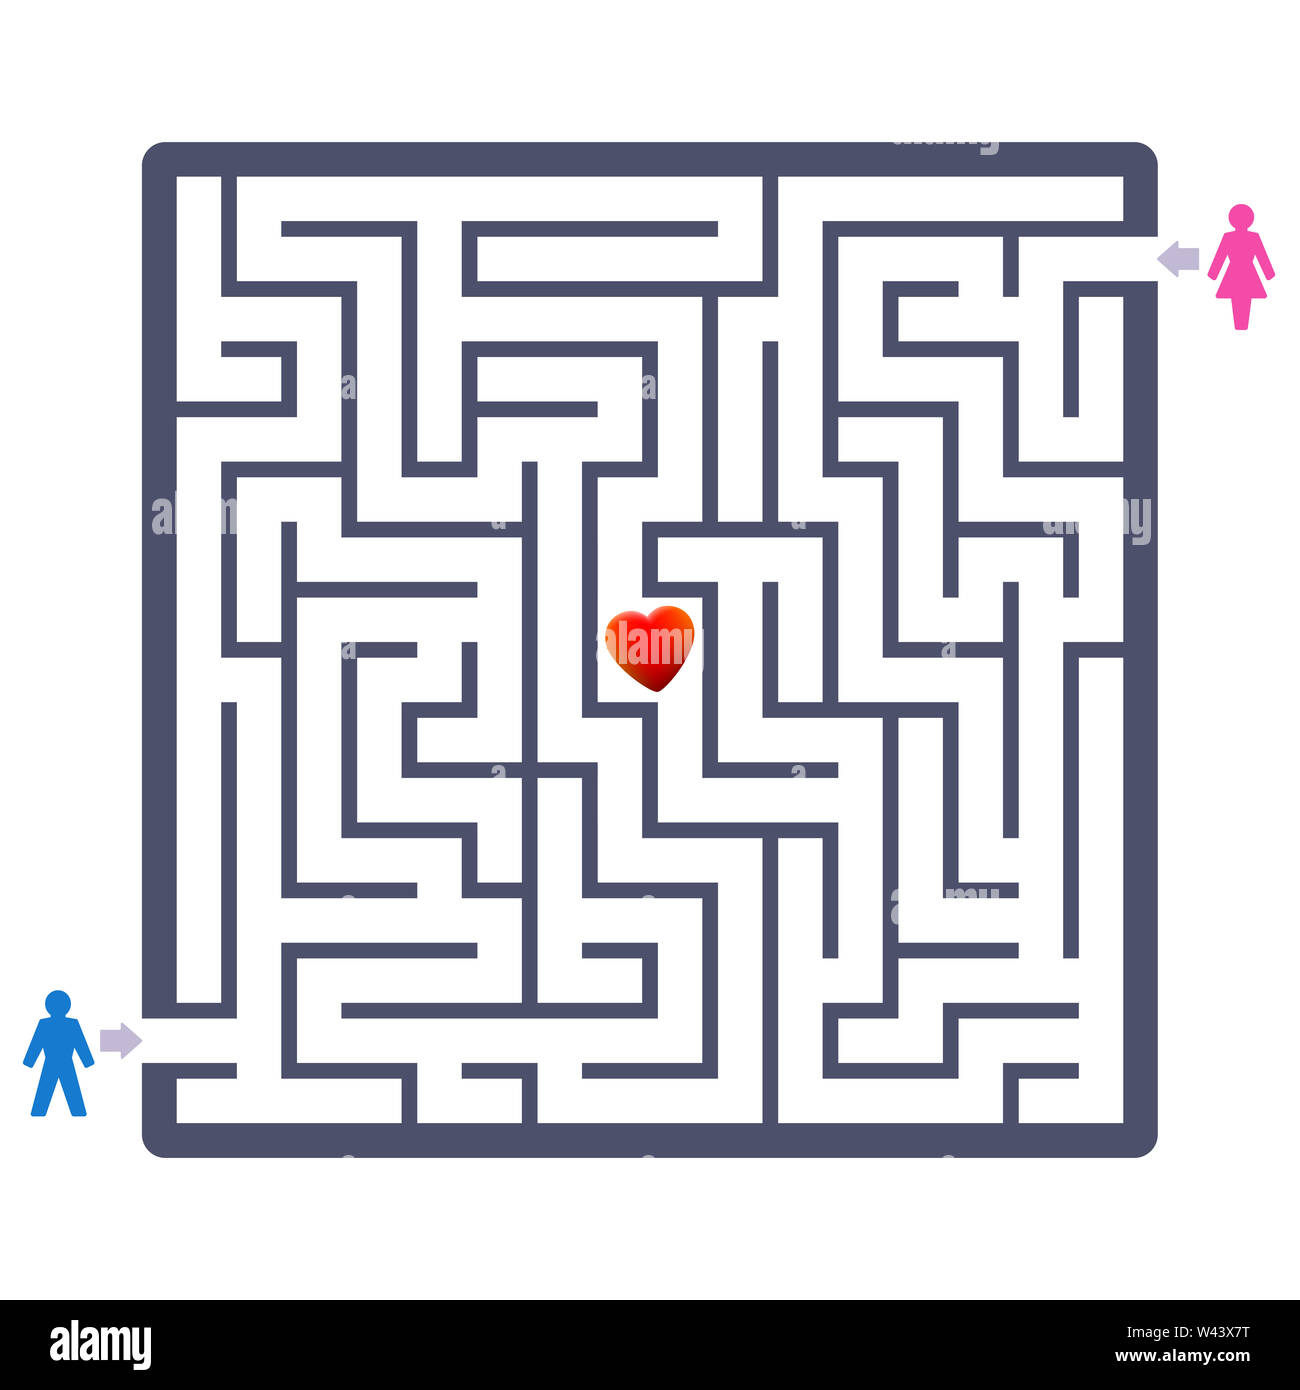 Liebe Paar Labyrinth mit Herzen in der Mitte. Finden Sie Ihre Partner Spaß Spiel-und symbolischen Therapeutikum über Partner suchen oder Partner Stockfoto